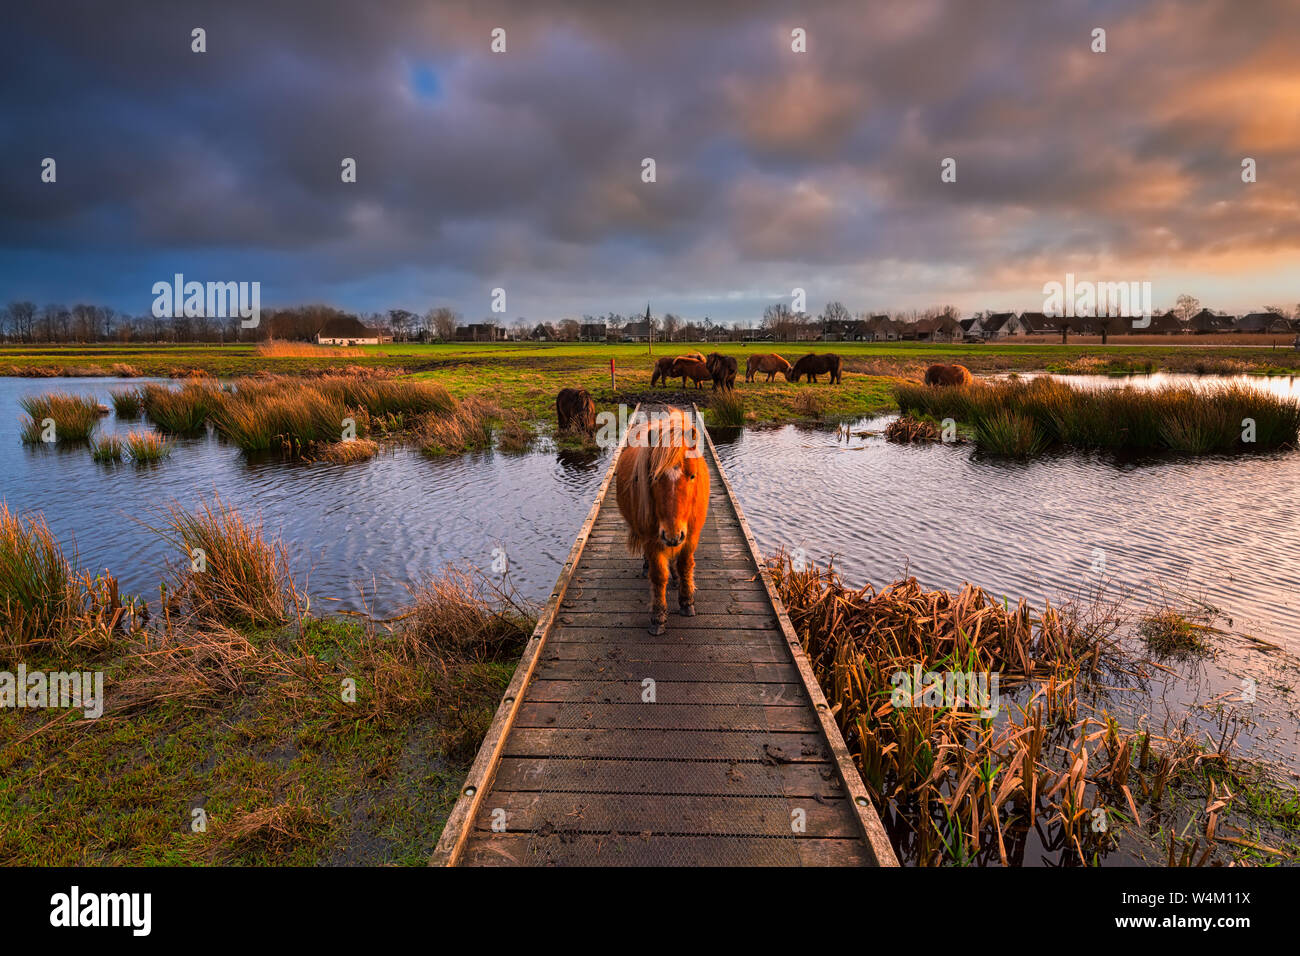 Un pony Shetland camminando su un molo su di un fiume in un bellissimo paesaggio naturale al tramonto con colori vibranti - Friesland, Paesi Bassi Foto Stock